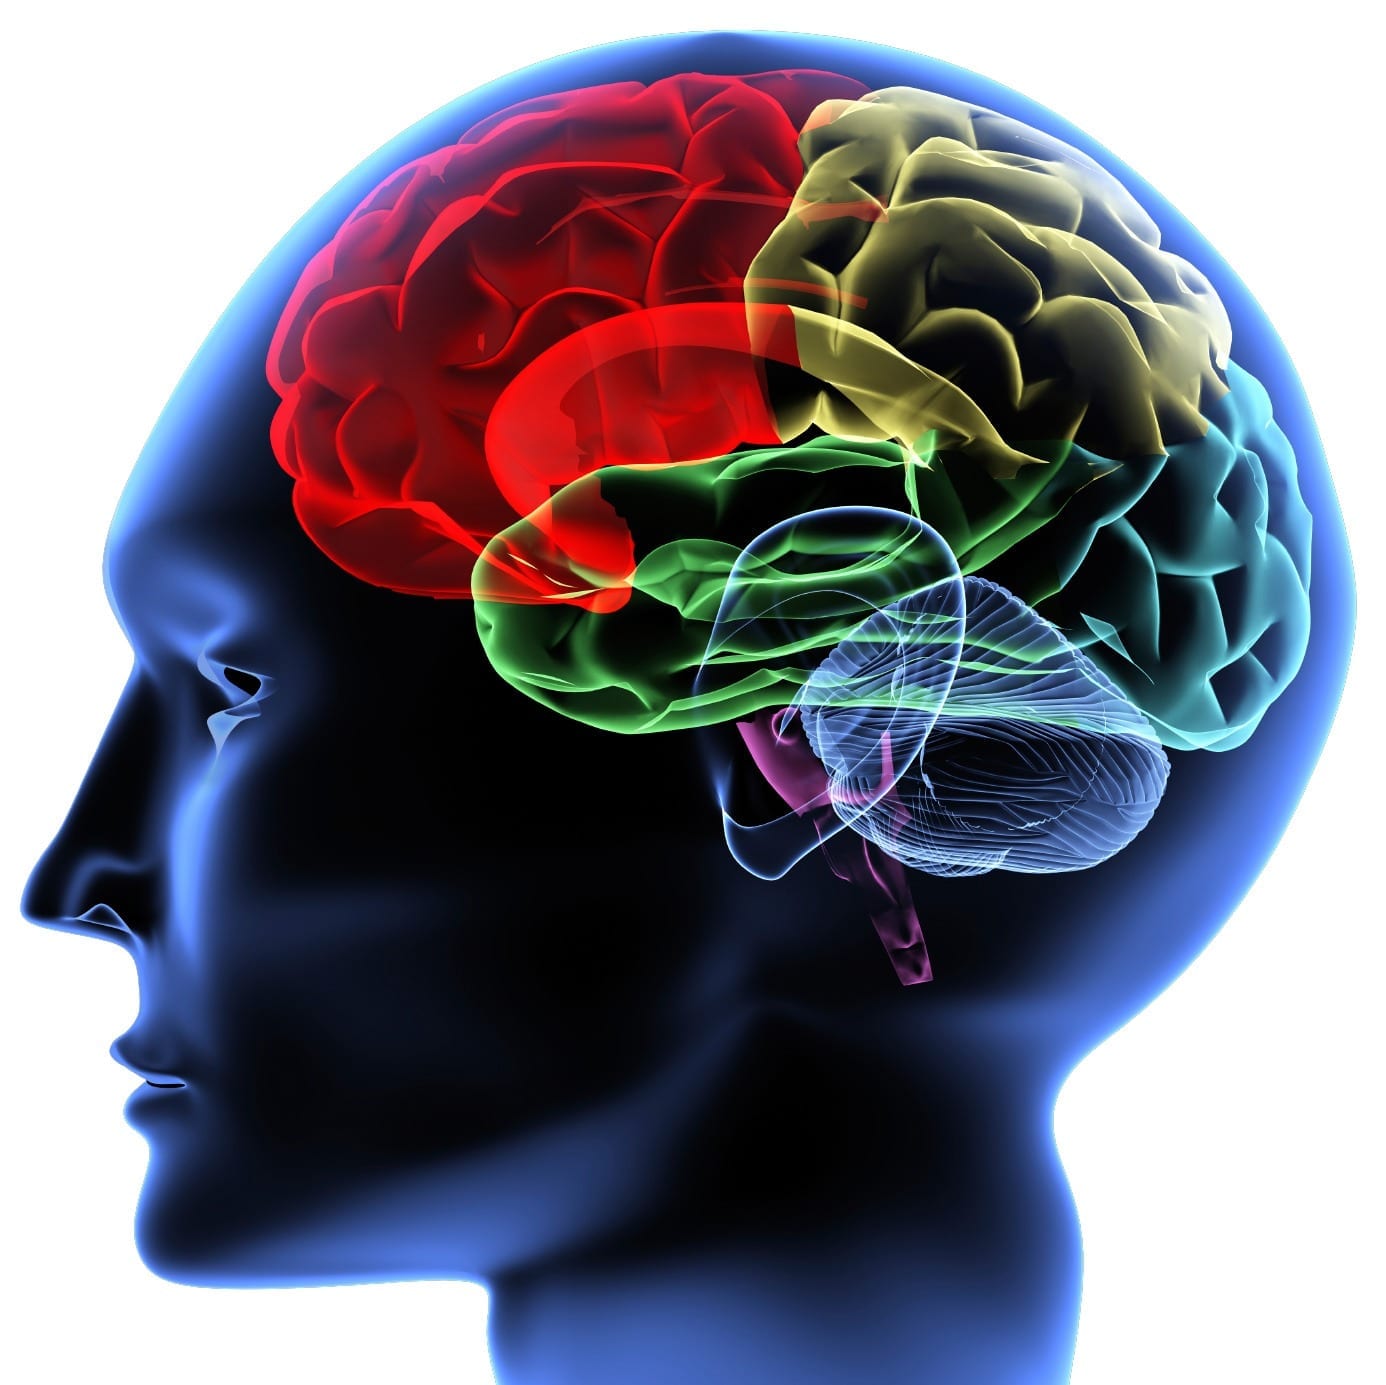 Brain imaging may help predict future behavior